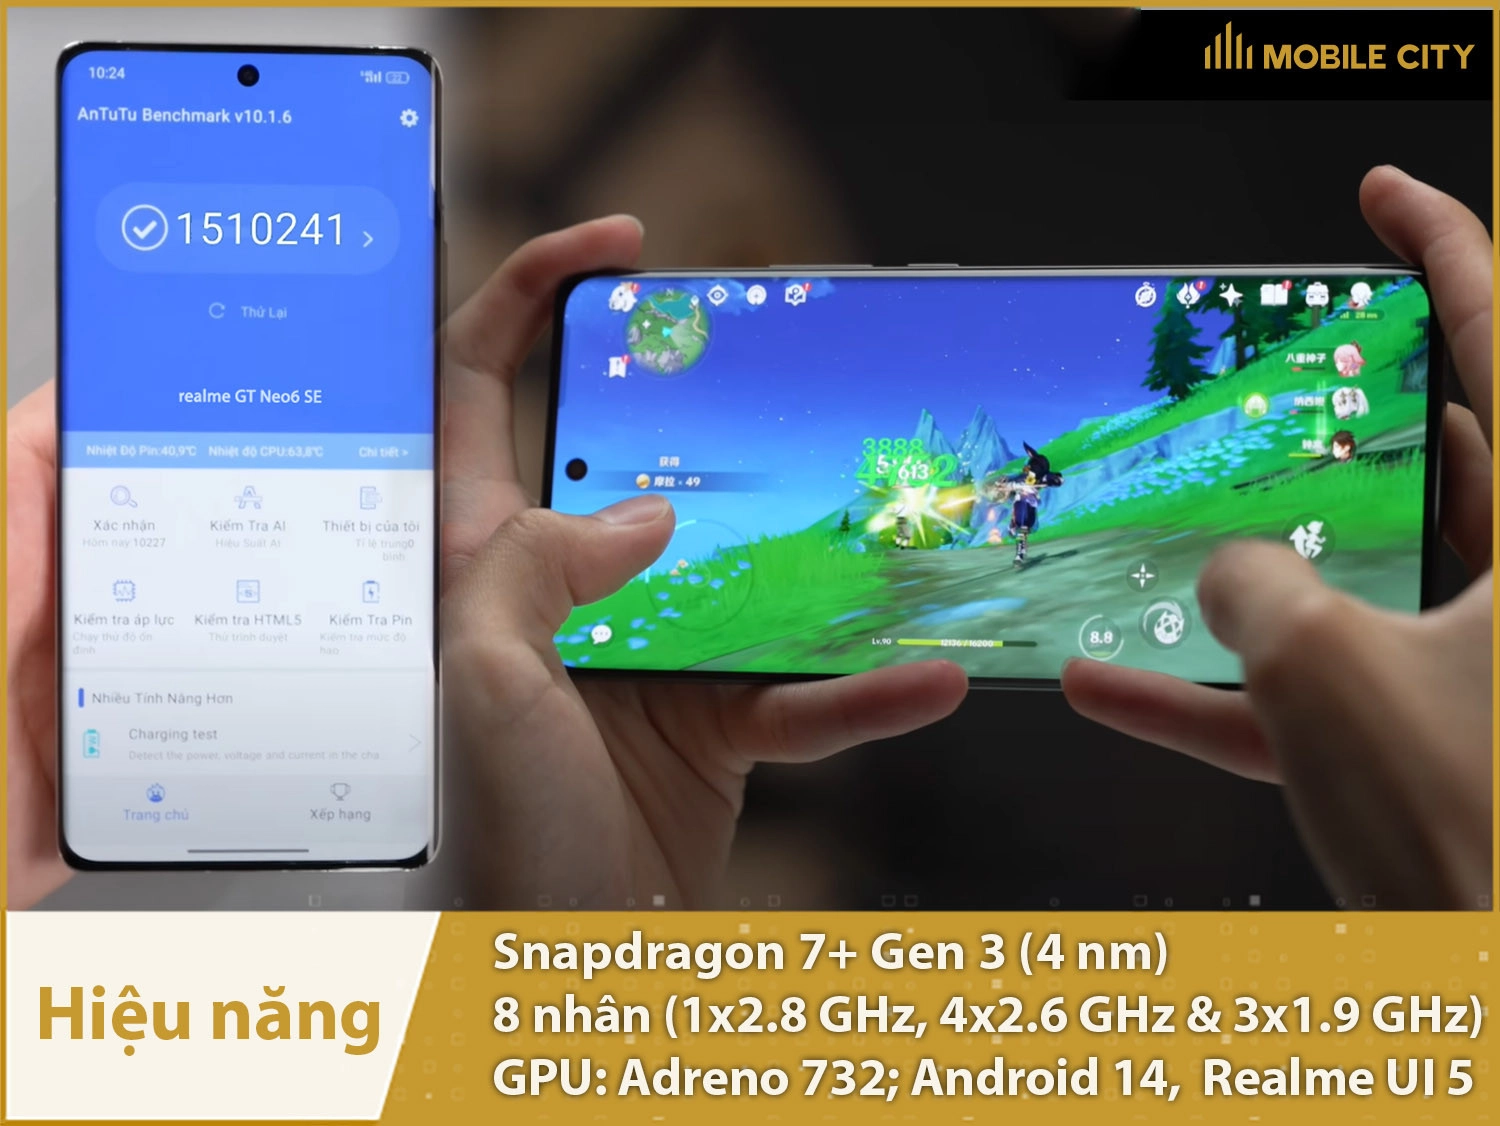 Hiệu năng siêu mạnh của Realme GT Neo 6 SE cung cấp bởi Snapdragon 7+ Gen 3 